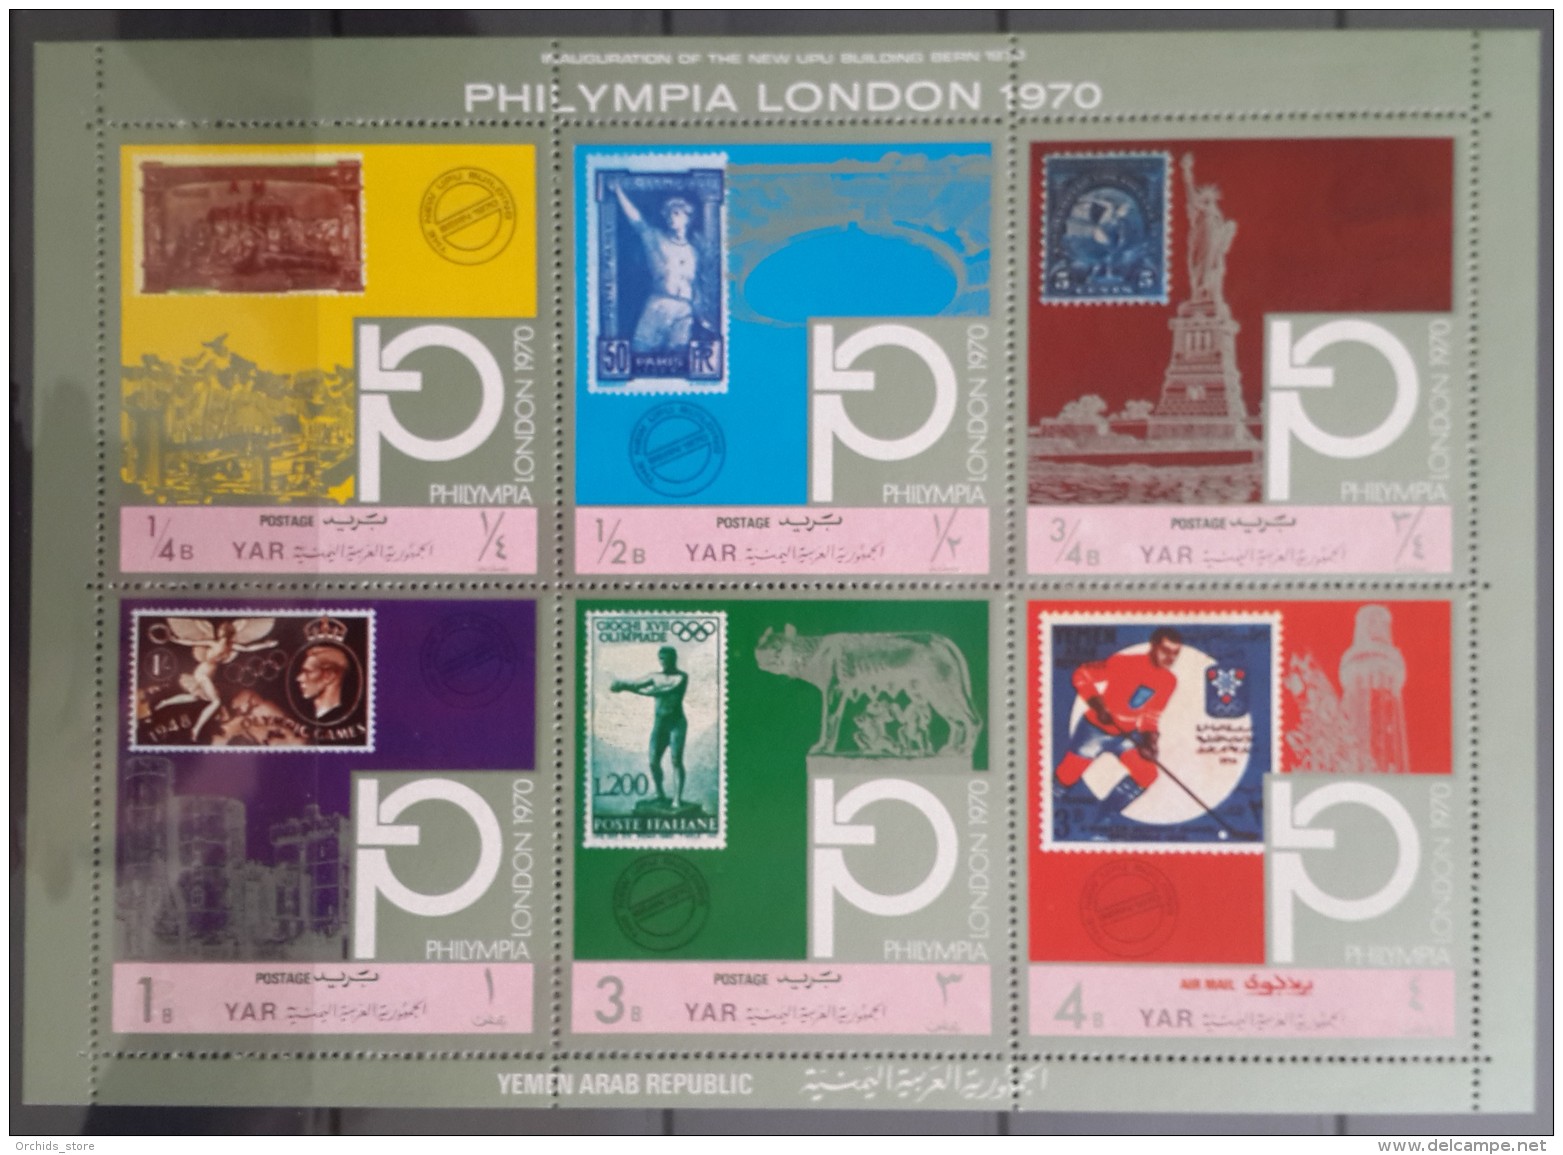 Q23 Yemen 1970 Mi 1209-1214 Cplte Set 6v. MNH - PHILYMPIA Expo London -Inauguration UPU NEW Building - Stamp On  Stamp - Yemen